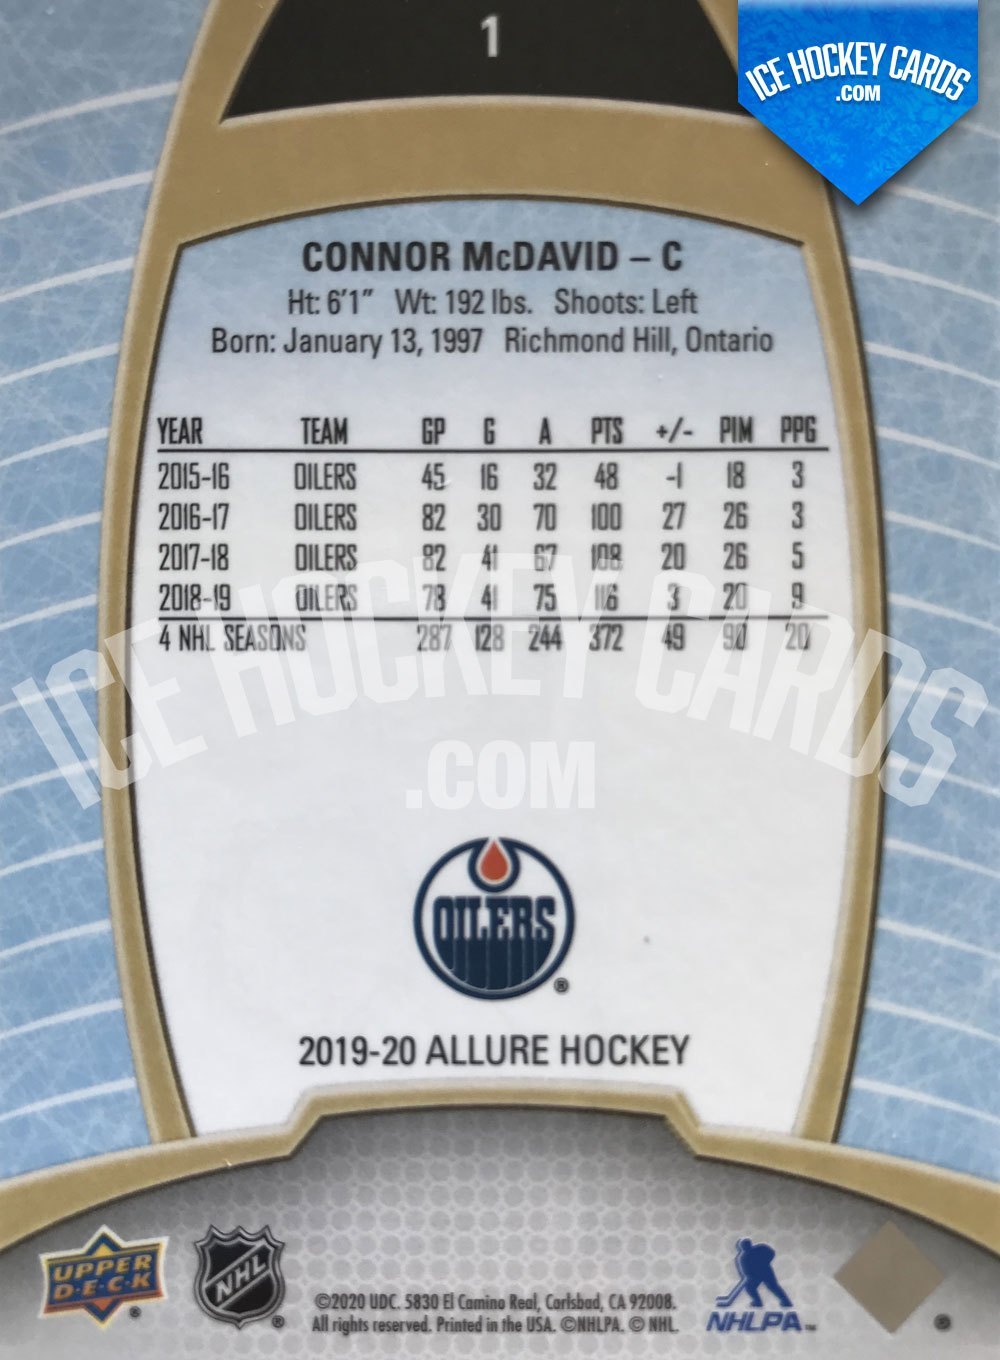 Upper Deck - Allure 19-20 - Connor McDavid Base Card #1 back